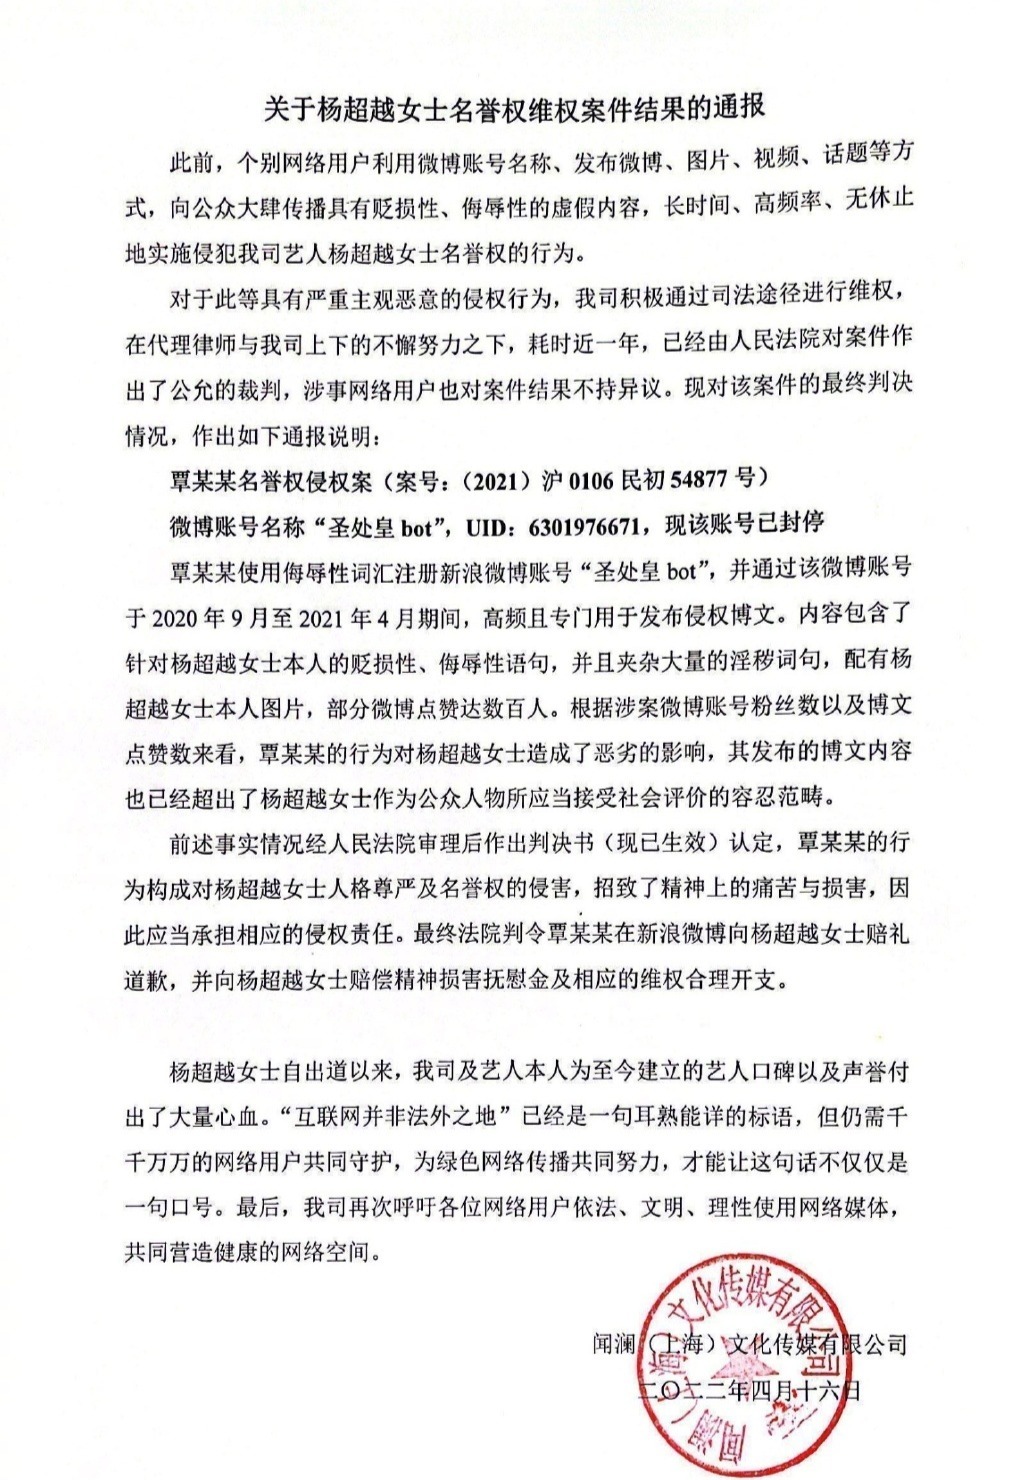 杨超越名誉权维权案胜诉 被告人发布手写信致歉